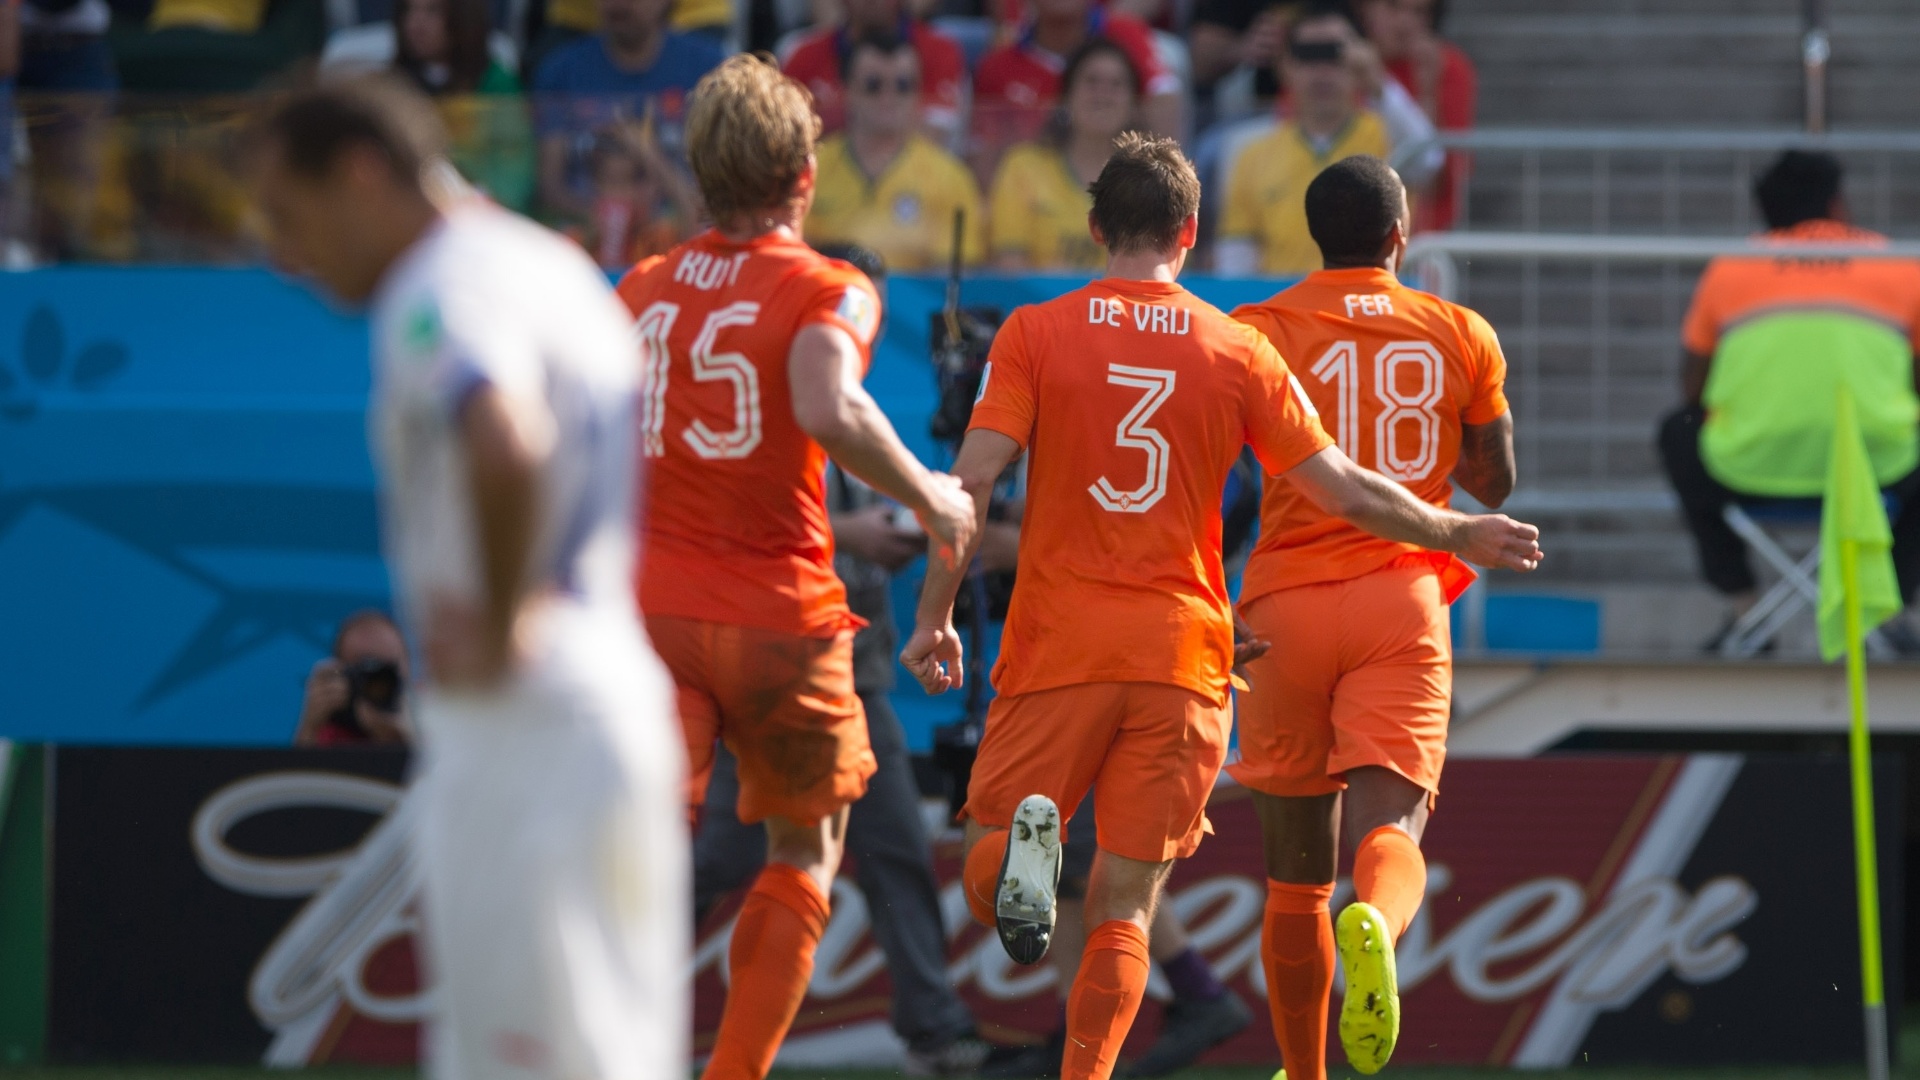 Jogadores da Holanda comemoram gol marcado por Leroy Fer contra o Chile